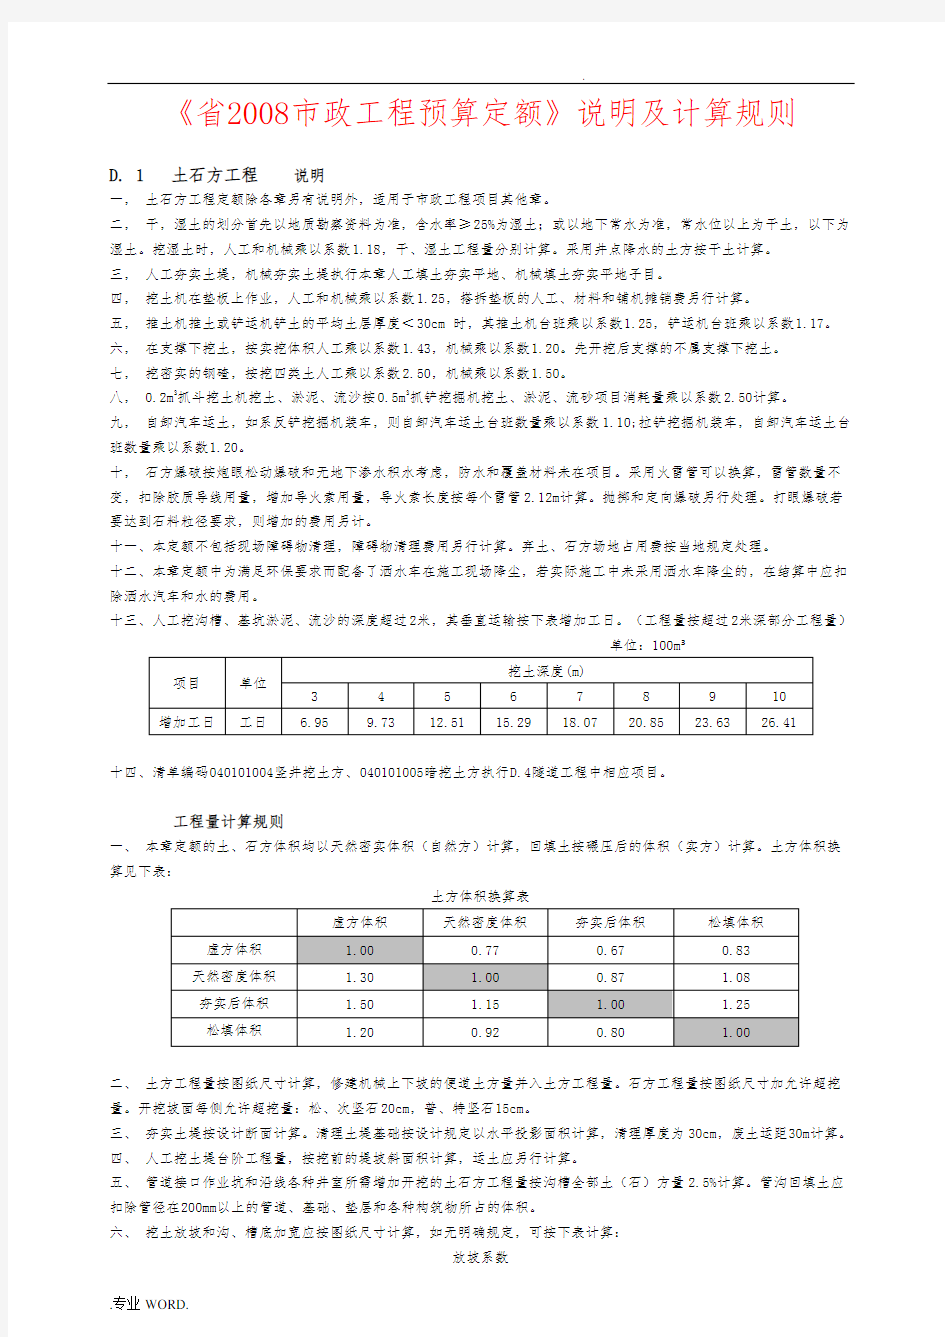 《辽宁省2008市政工程预算定额》说明及工程量计算规则全解